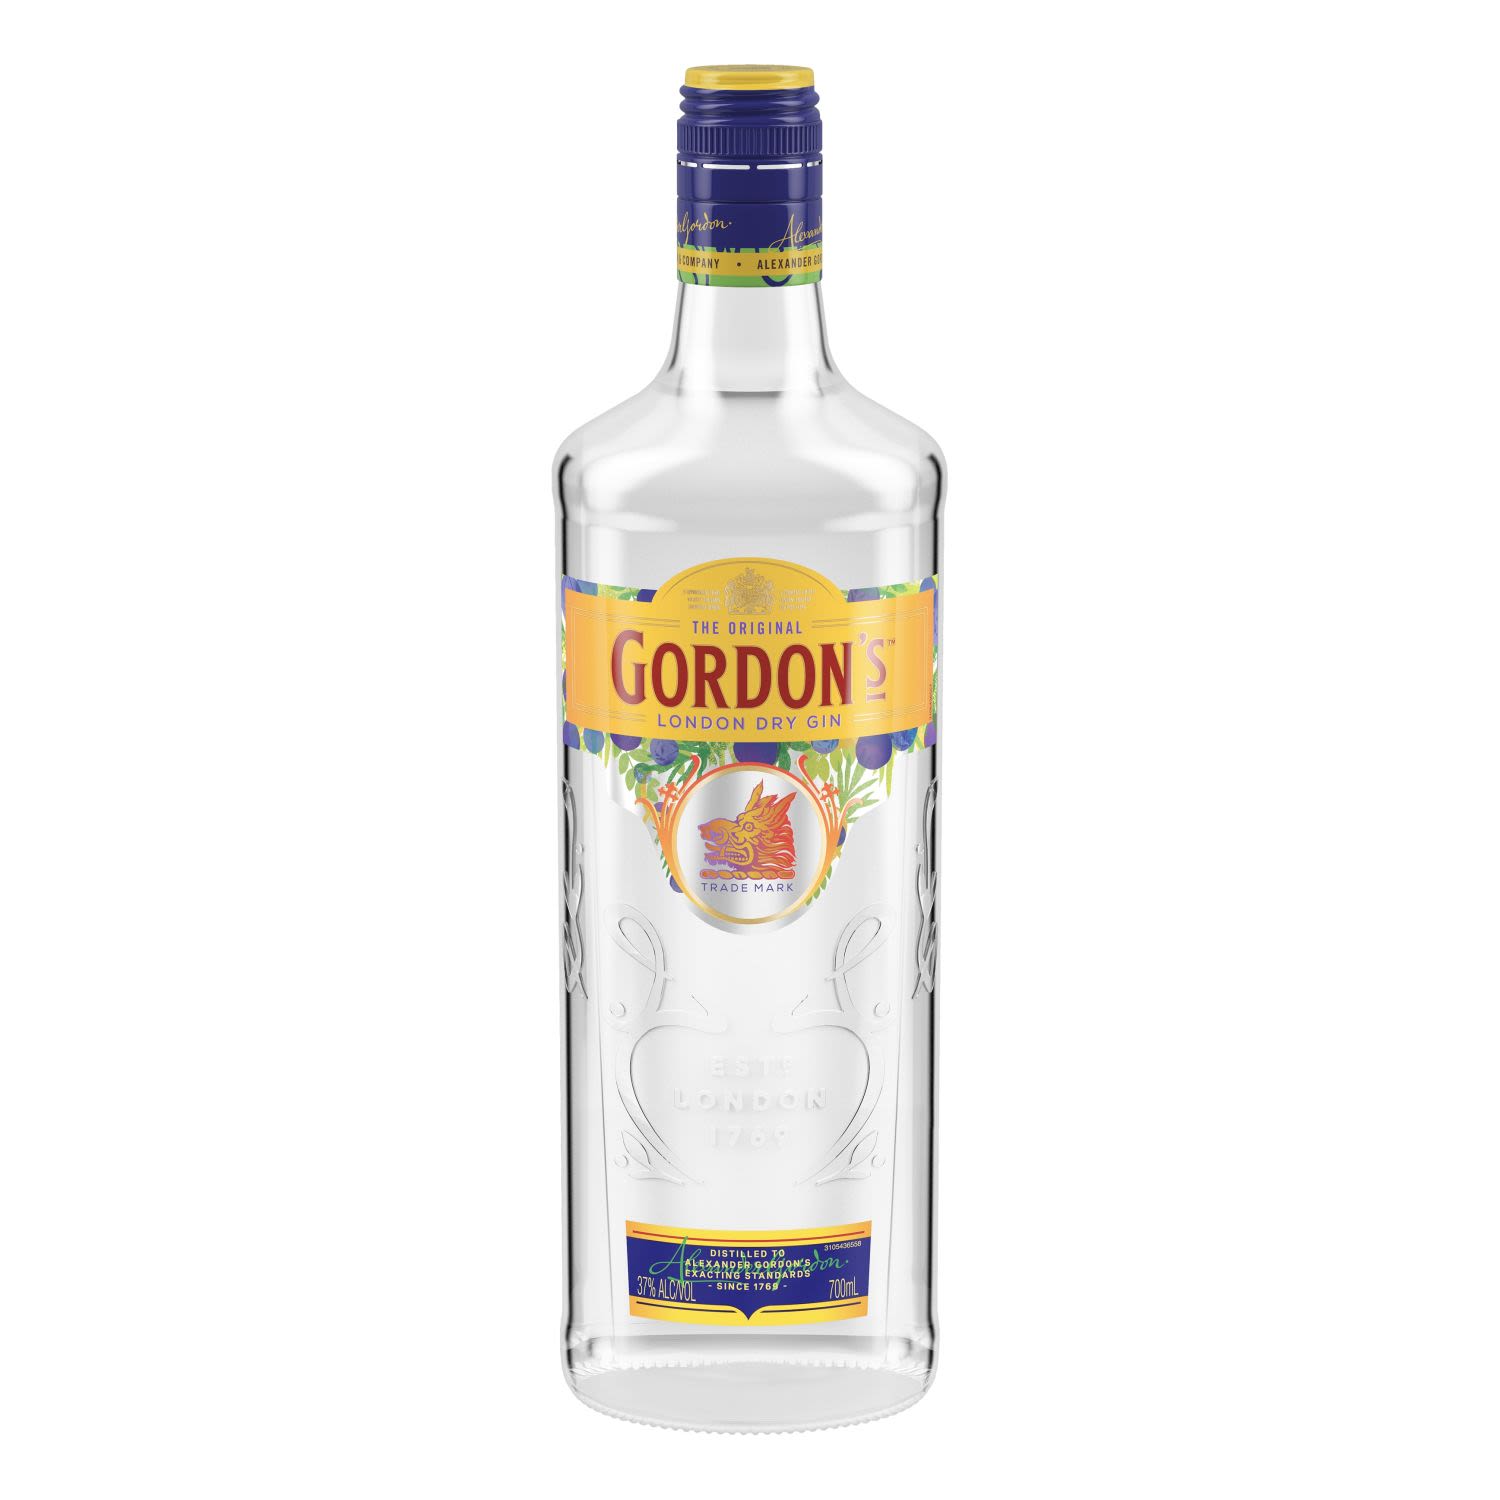 Gordon's London Dry Gin 700mL Bottle